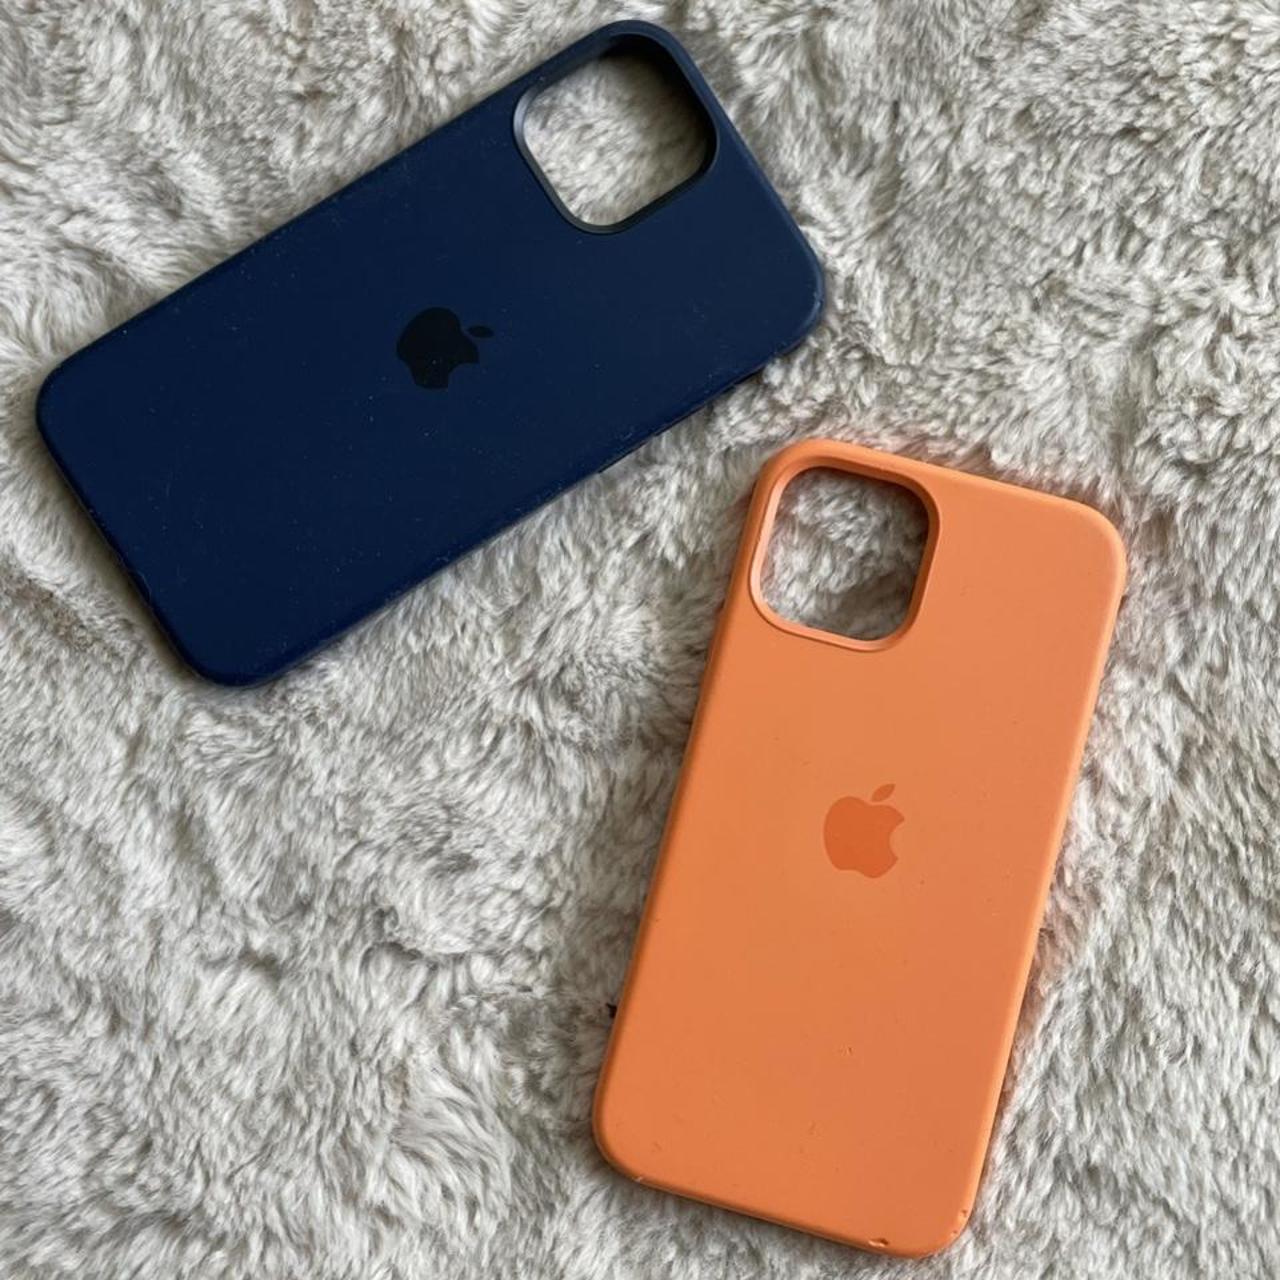 Apple Navy and Orange Phone-cases